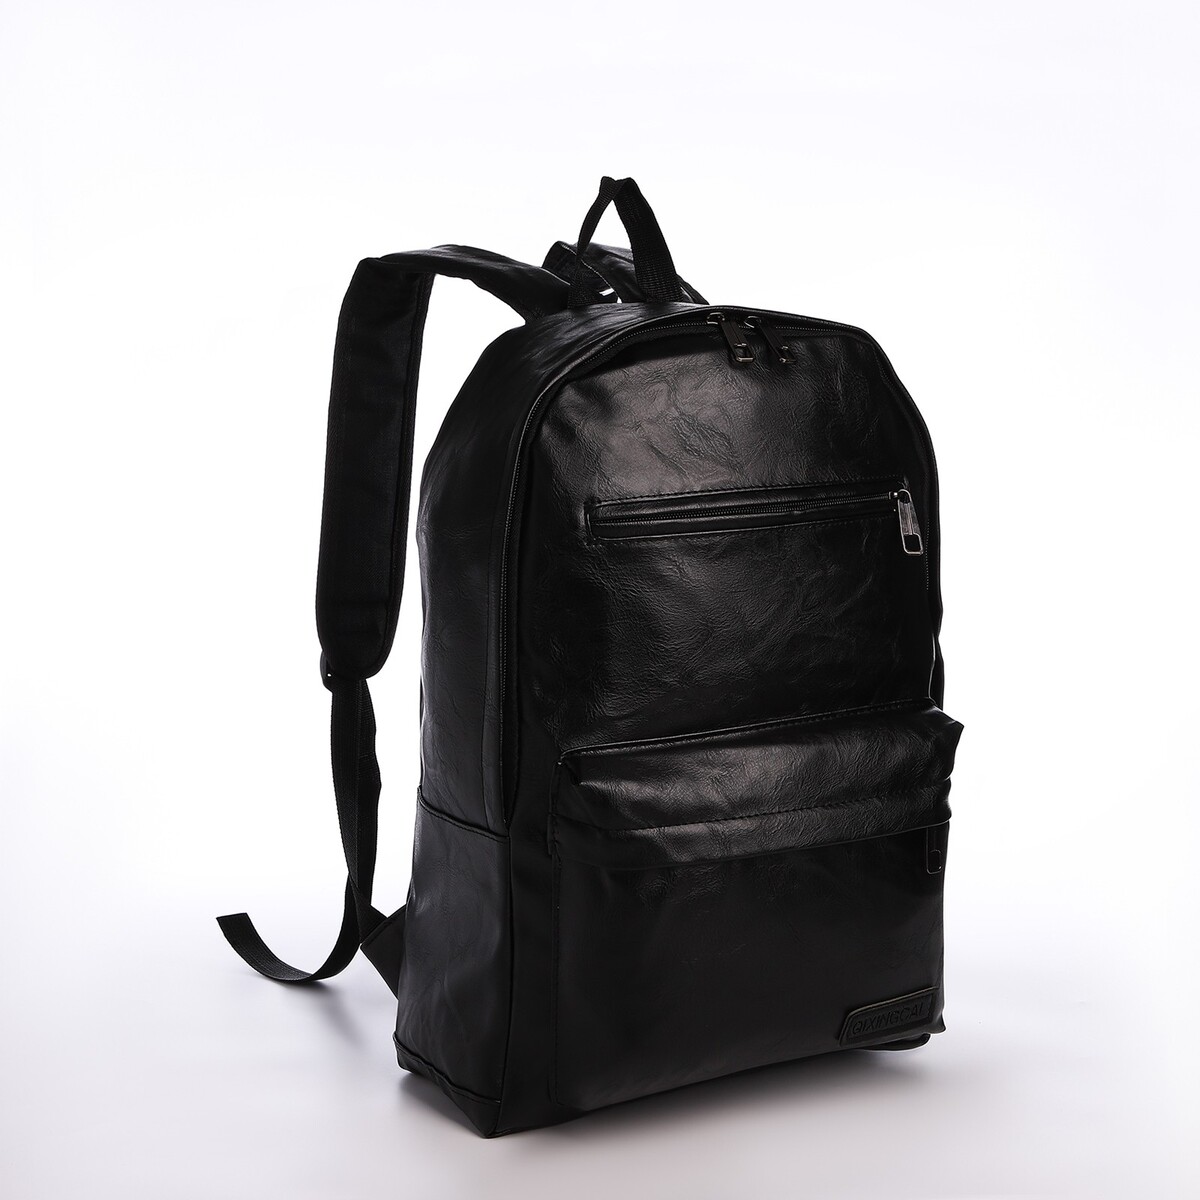 Рюкзак городской из искусственной кожи на молнии, 4 кармана, цвет черный рюкзак женский городской textura